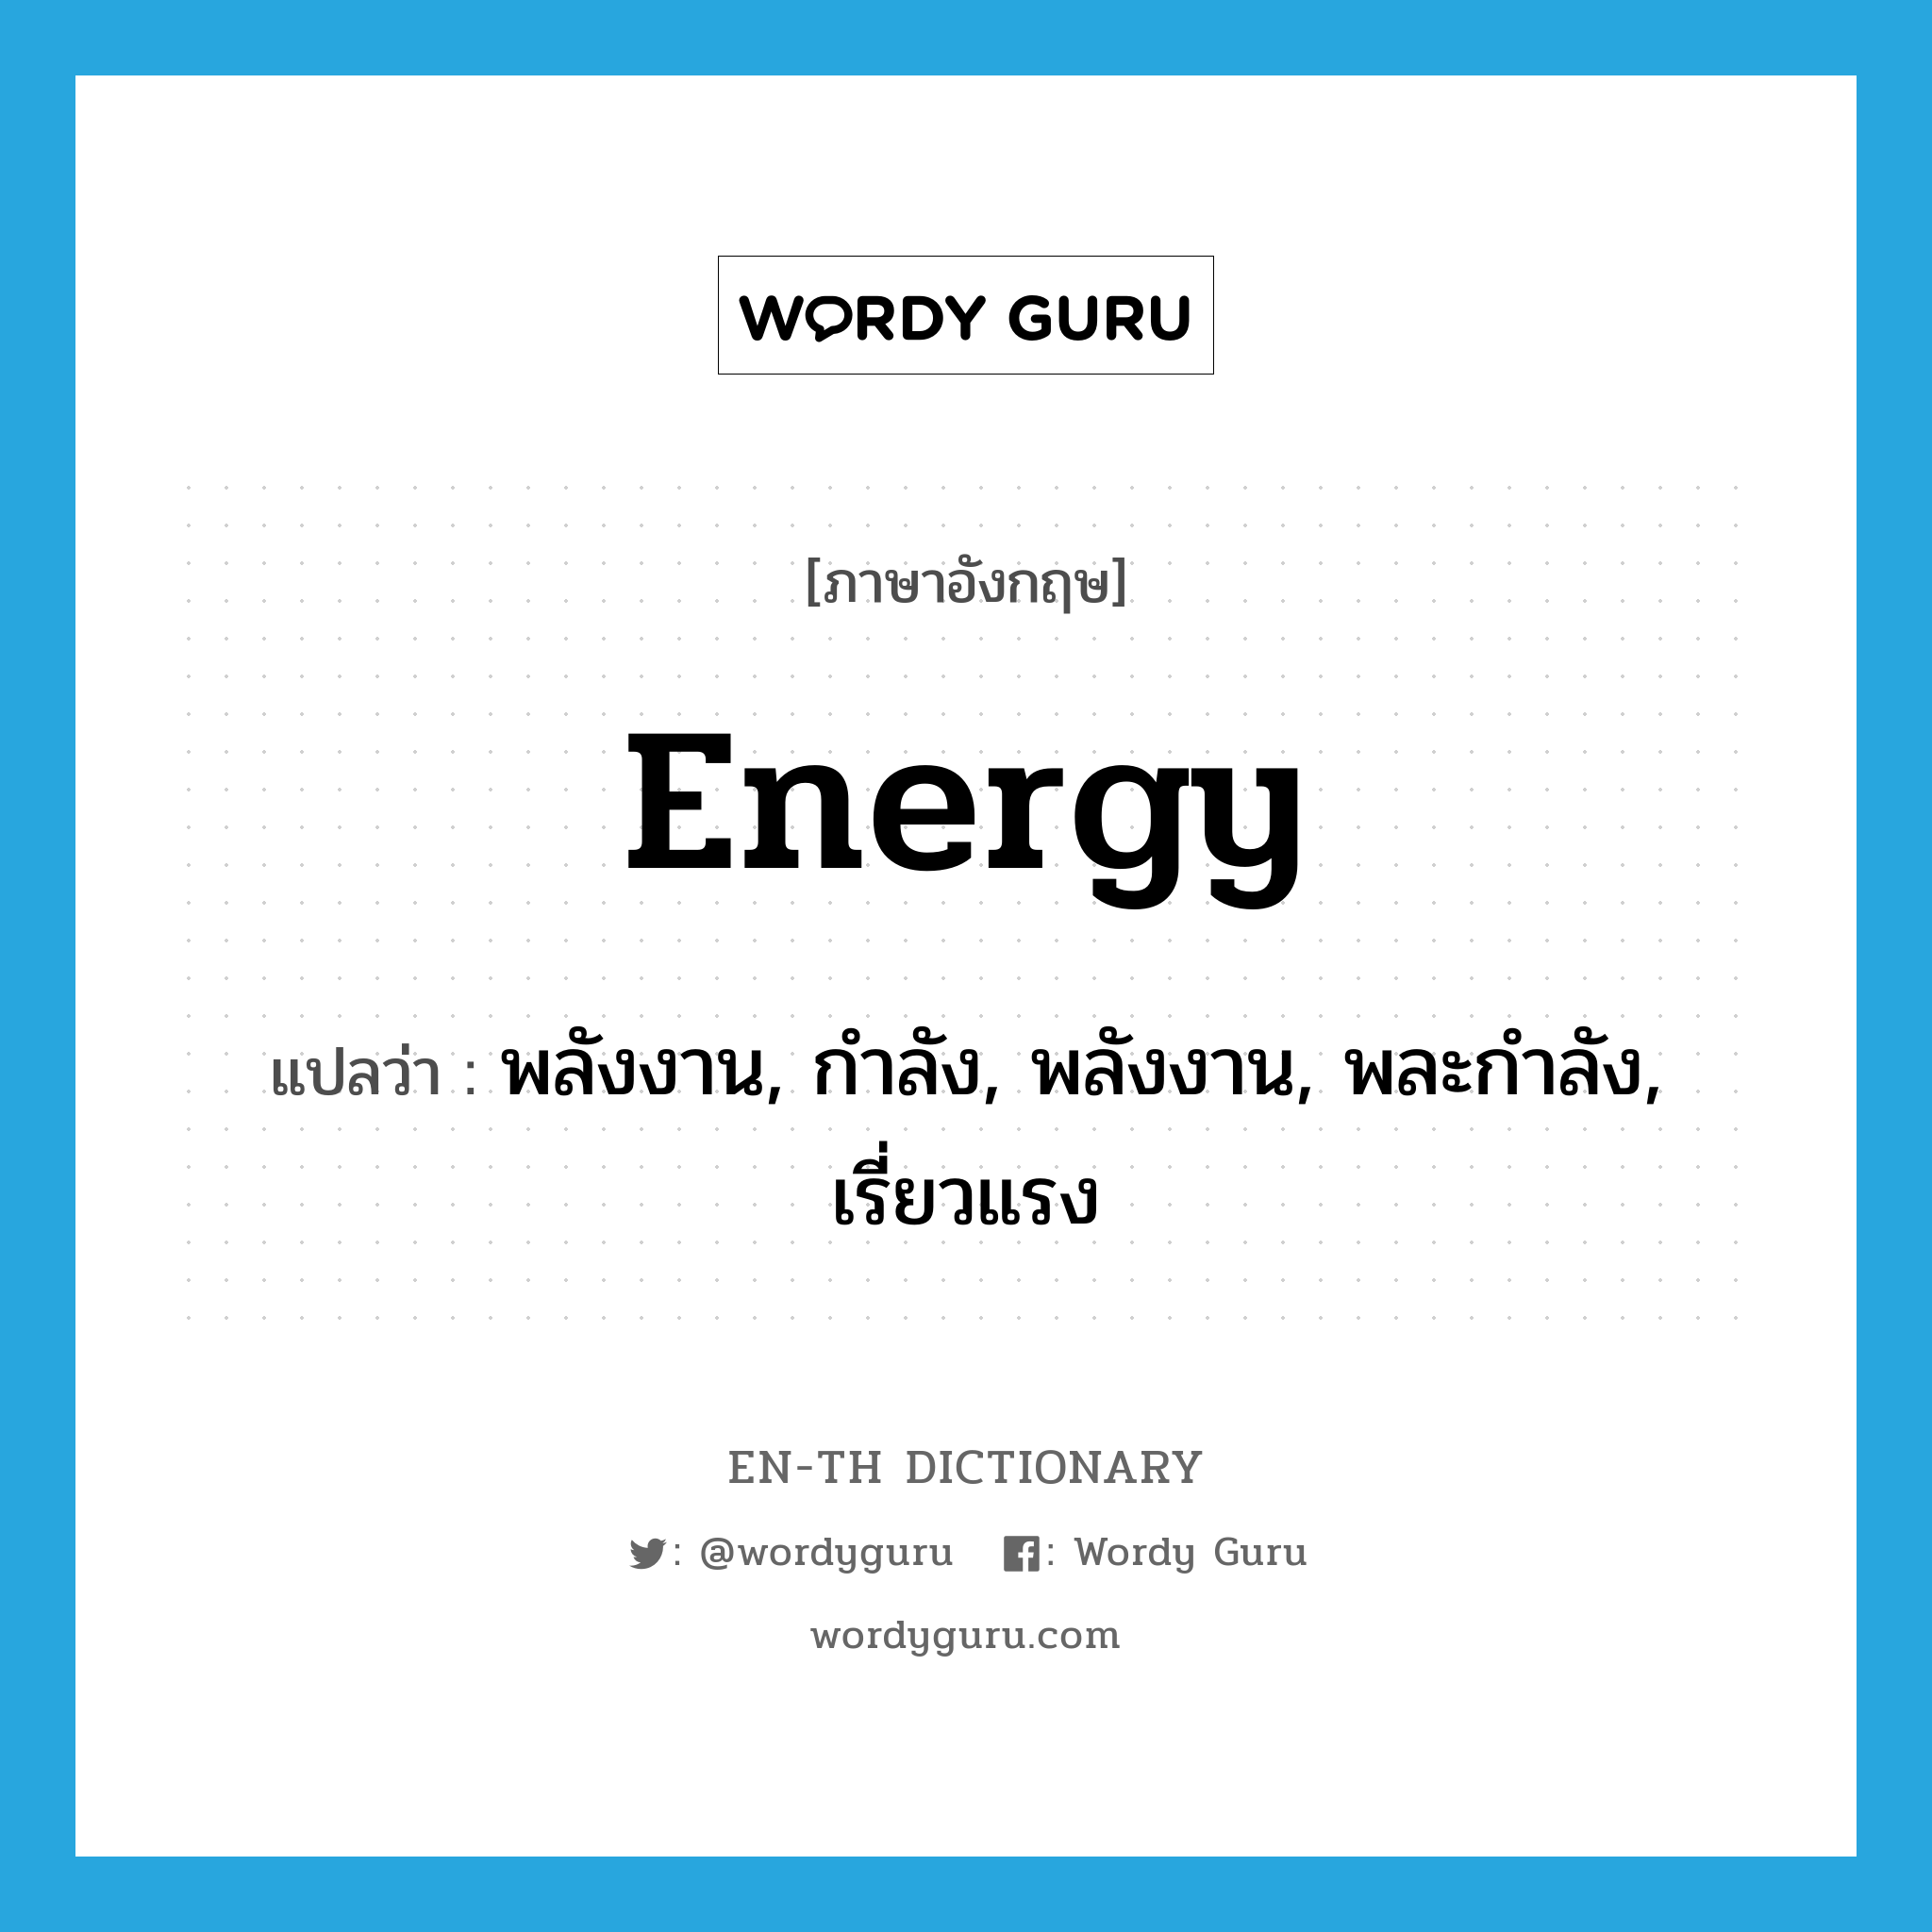 พลังงาน, กำลัง, พลังงาน, พละกำลัง, เรี่ยวแรง ภาษาอังกฤษ?, คำศัพท์ภาษาอังกฤษ พลังงาน, กำลัง, พลังงาน, พละกำลัง, เรี่ยวแรง แปลว่า energy ประเภท N หมวด N